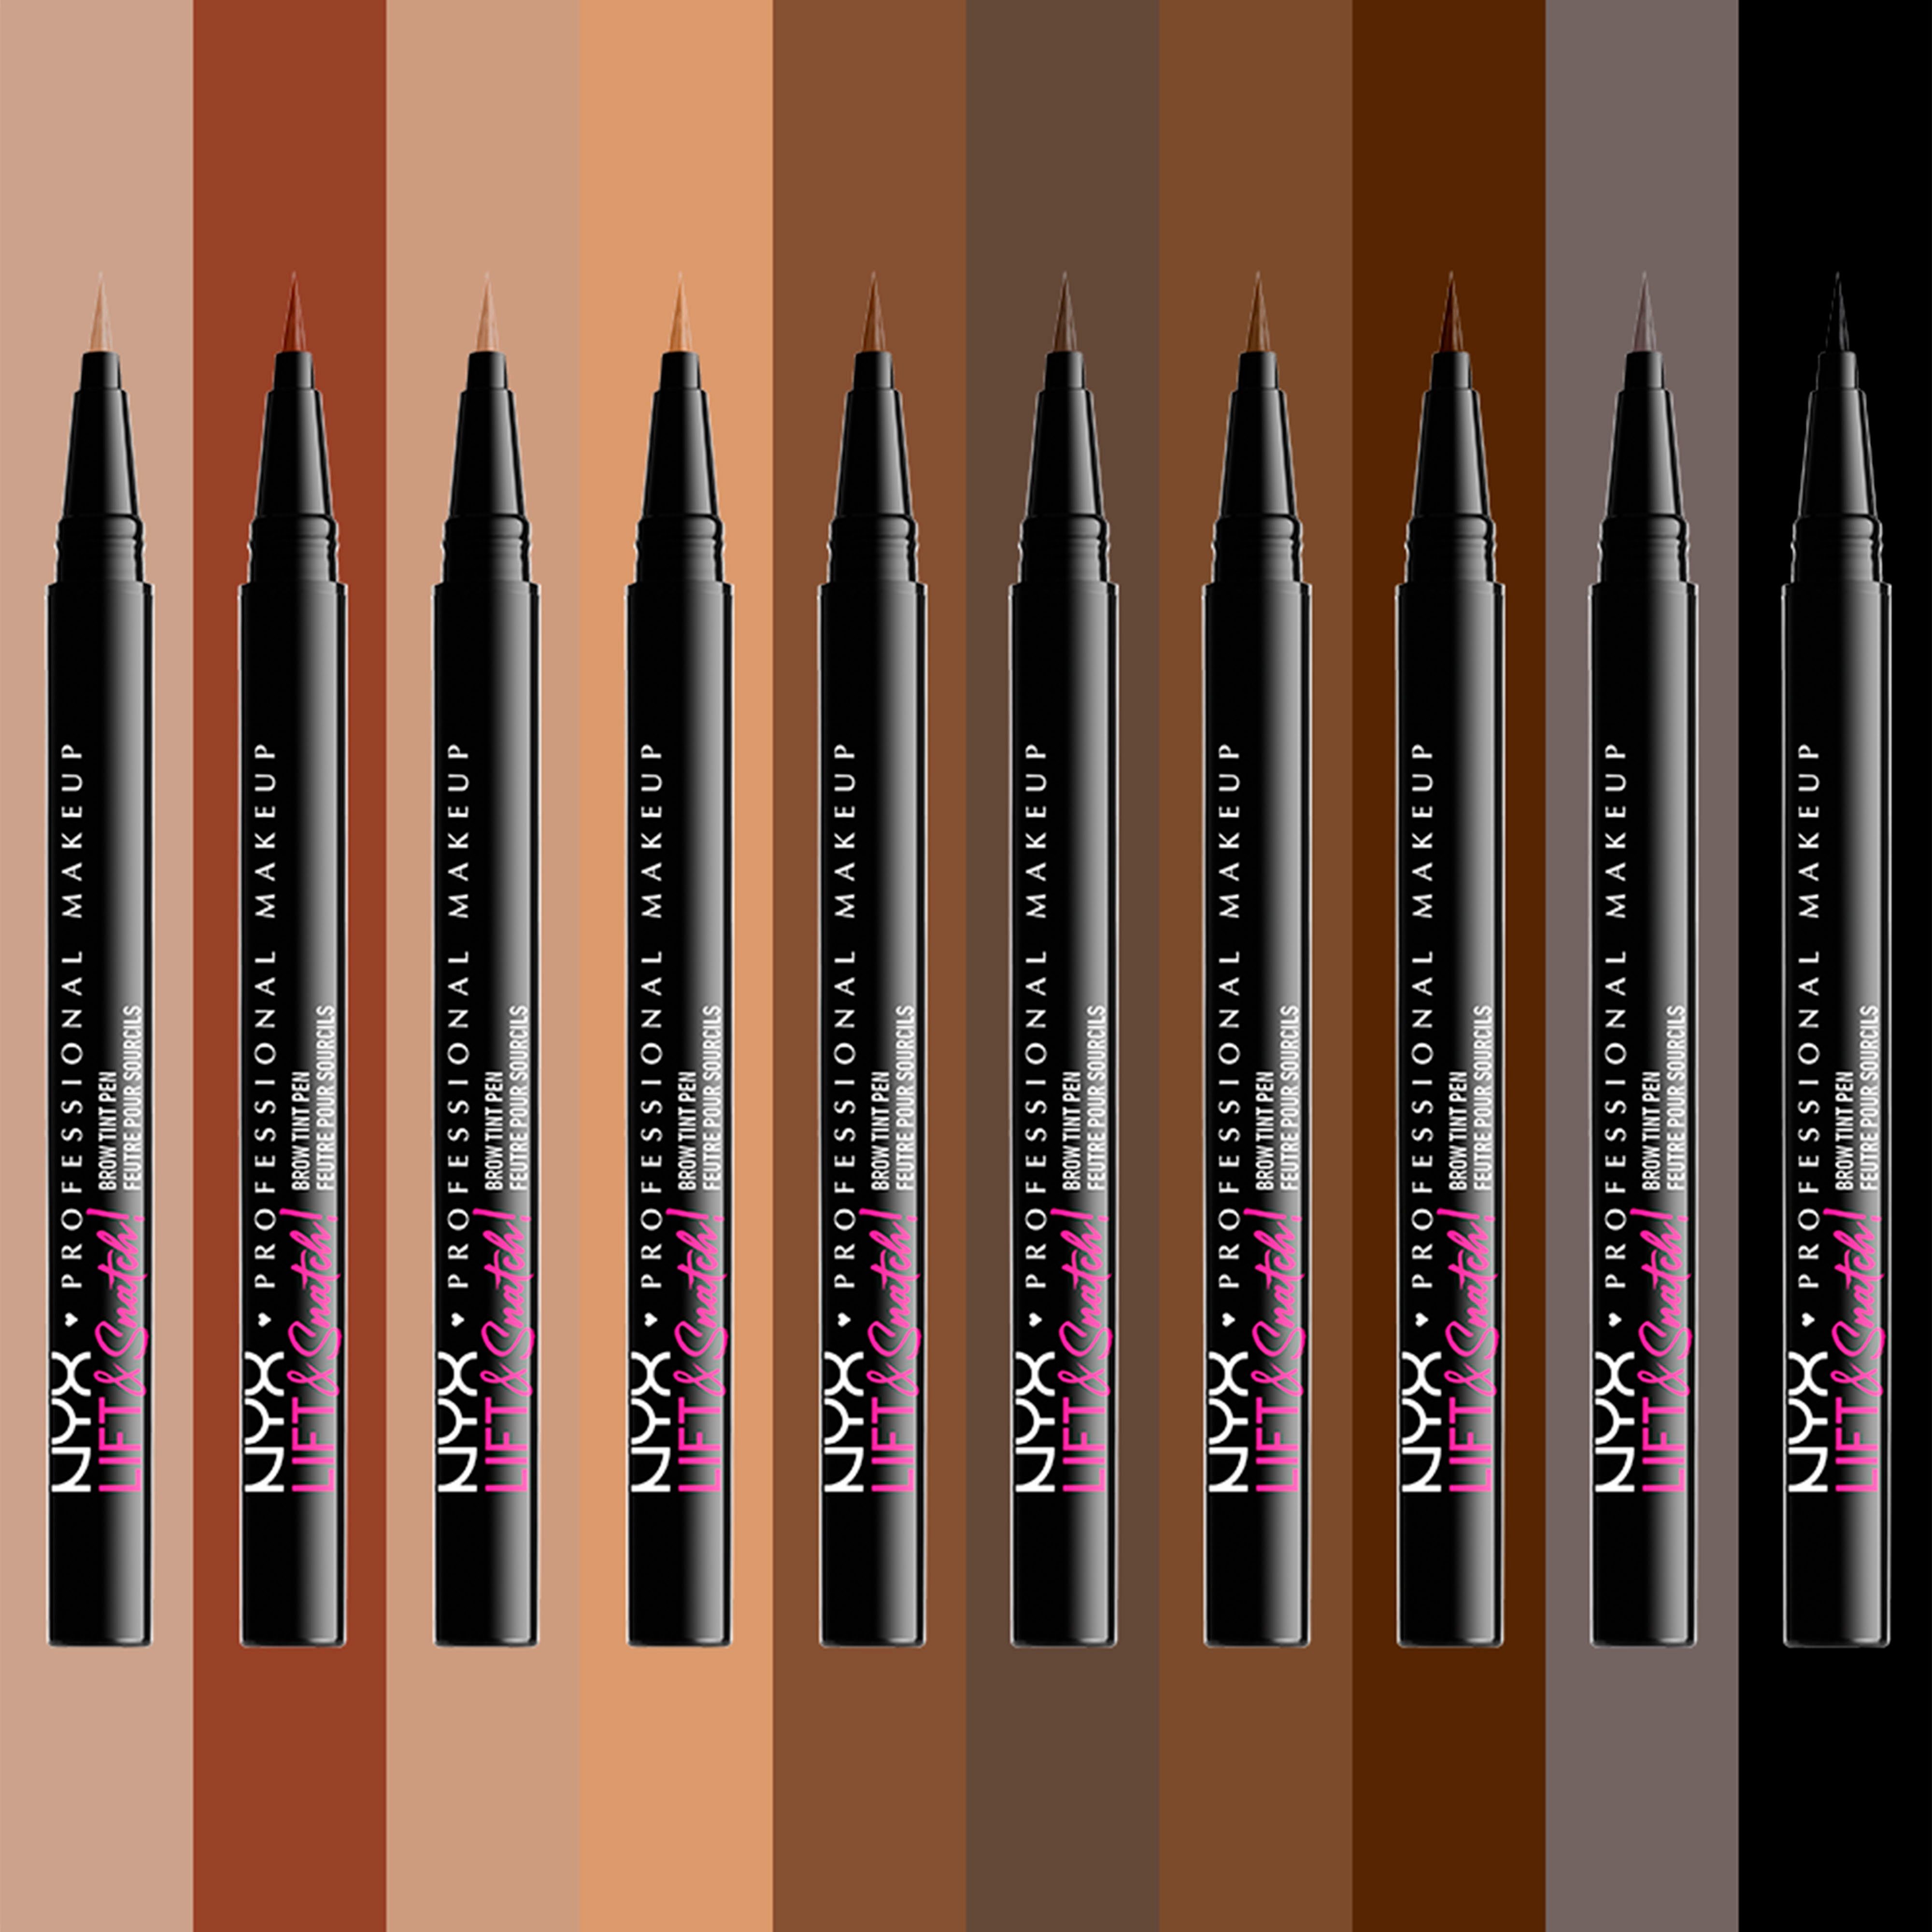 Snatch Brow Makeup & NYX Lift Pen Professional Augenbrauen-Stift brunette Tint